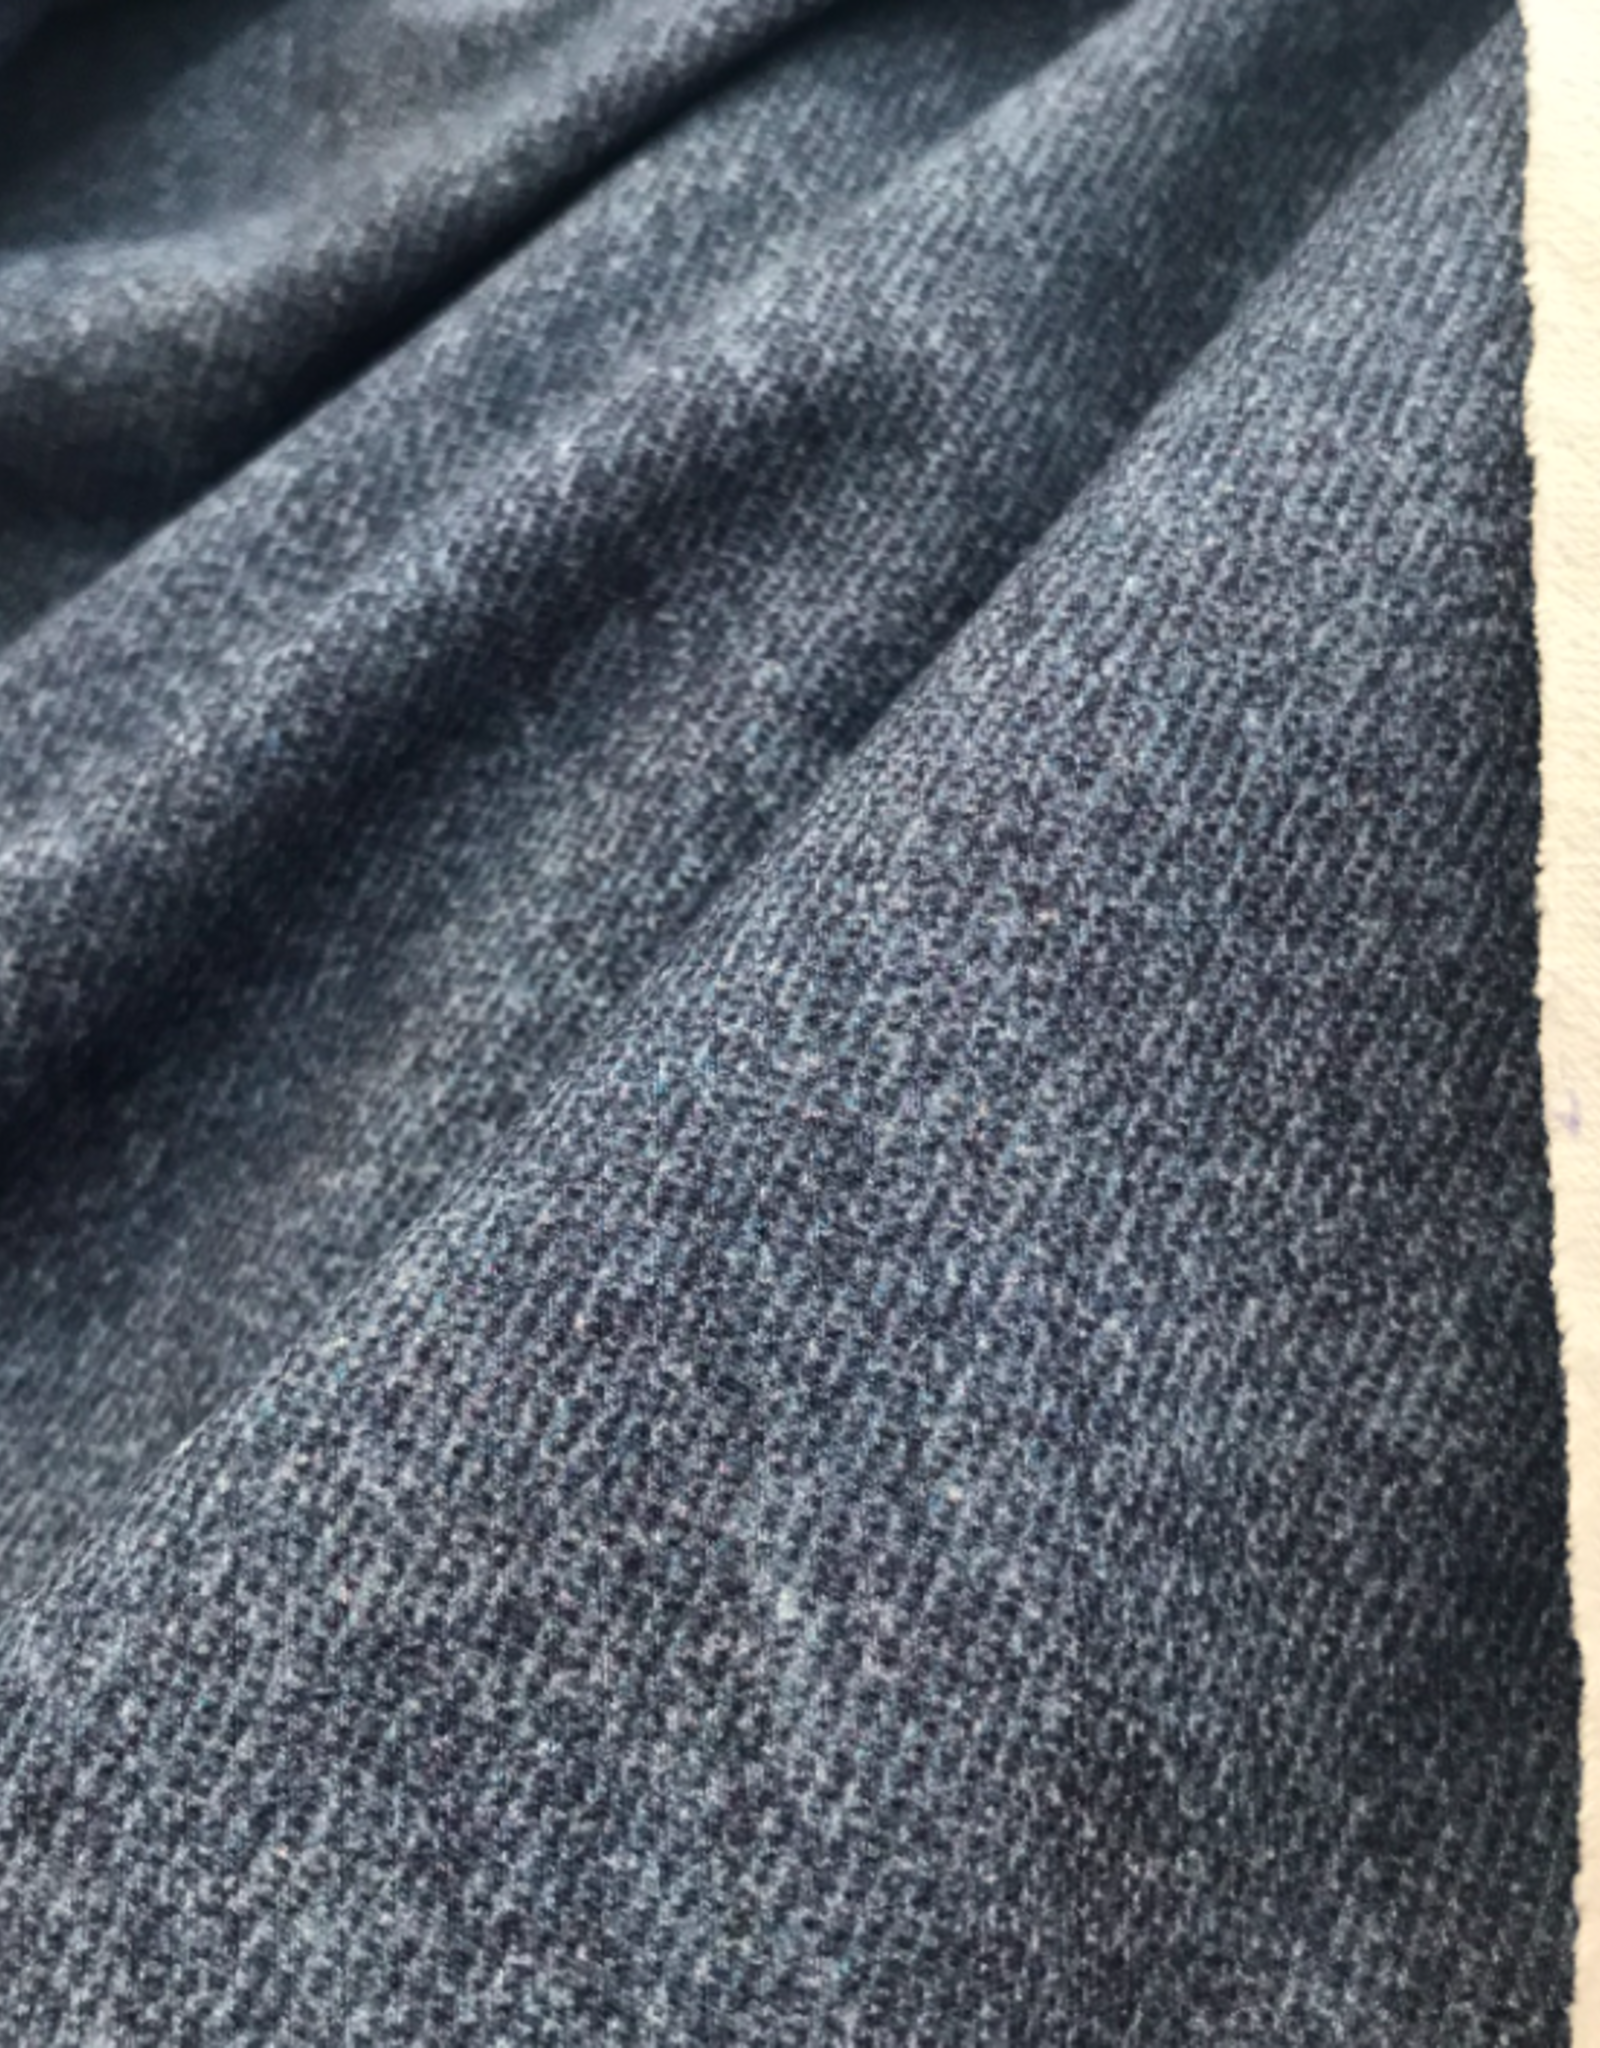 Poppy French Terry GOTS Digital Print Jeans lookalike - blauw